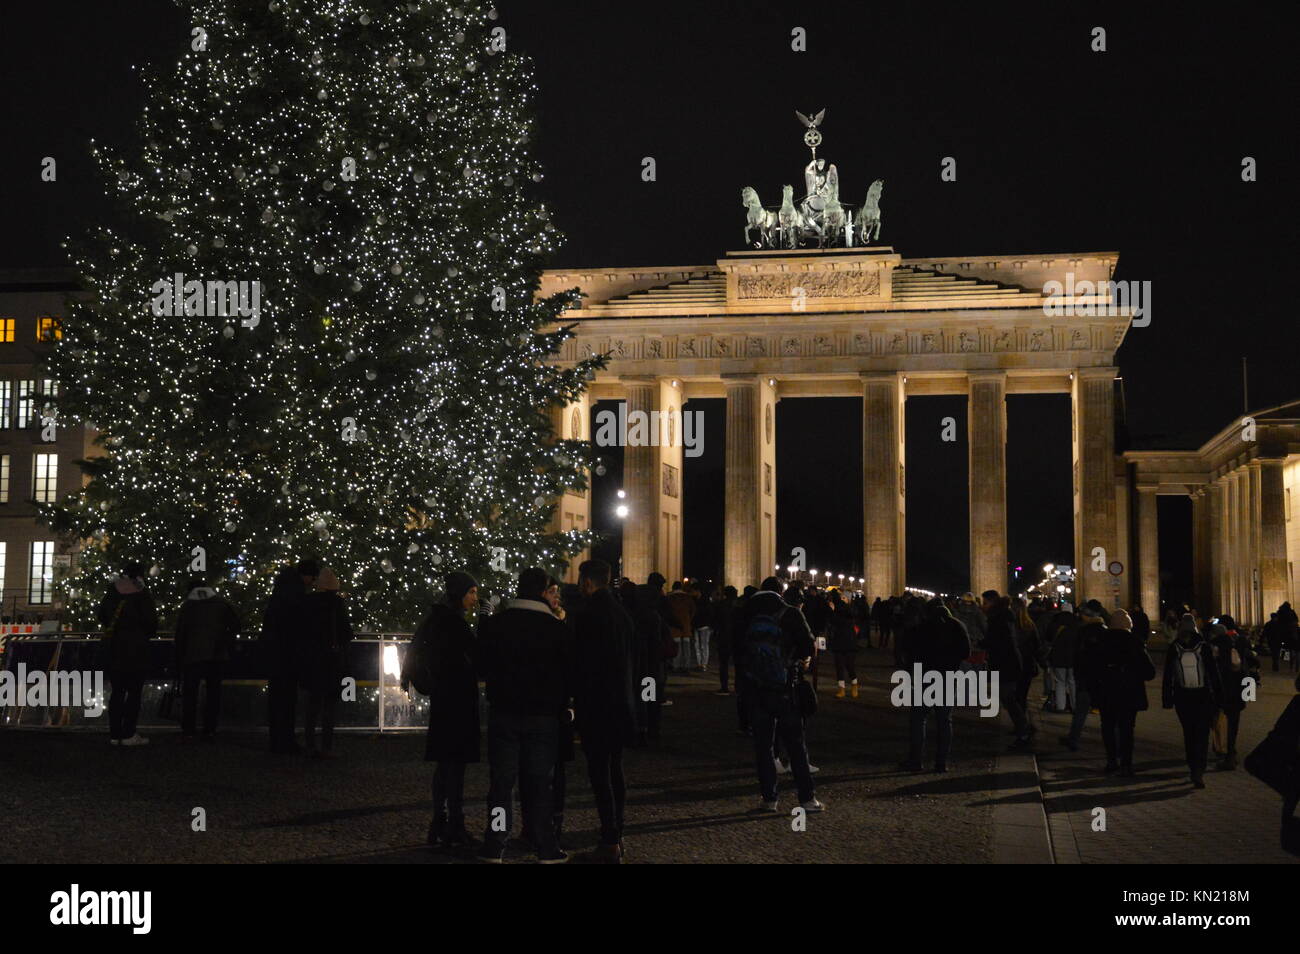 Weihnachtsbaum am Pariser Platz vor dem Brandenburger Tor in Berlin, Deutschland Stockfoto